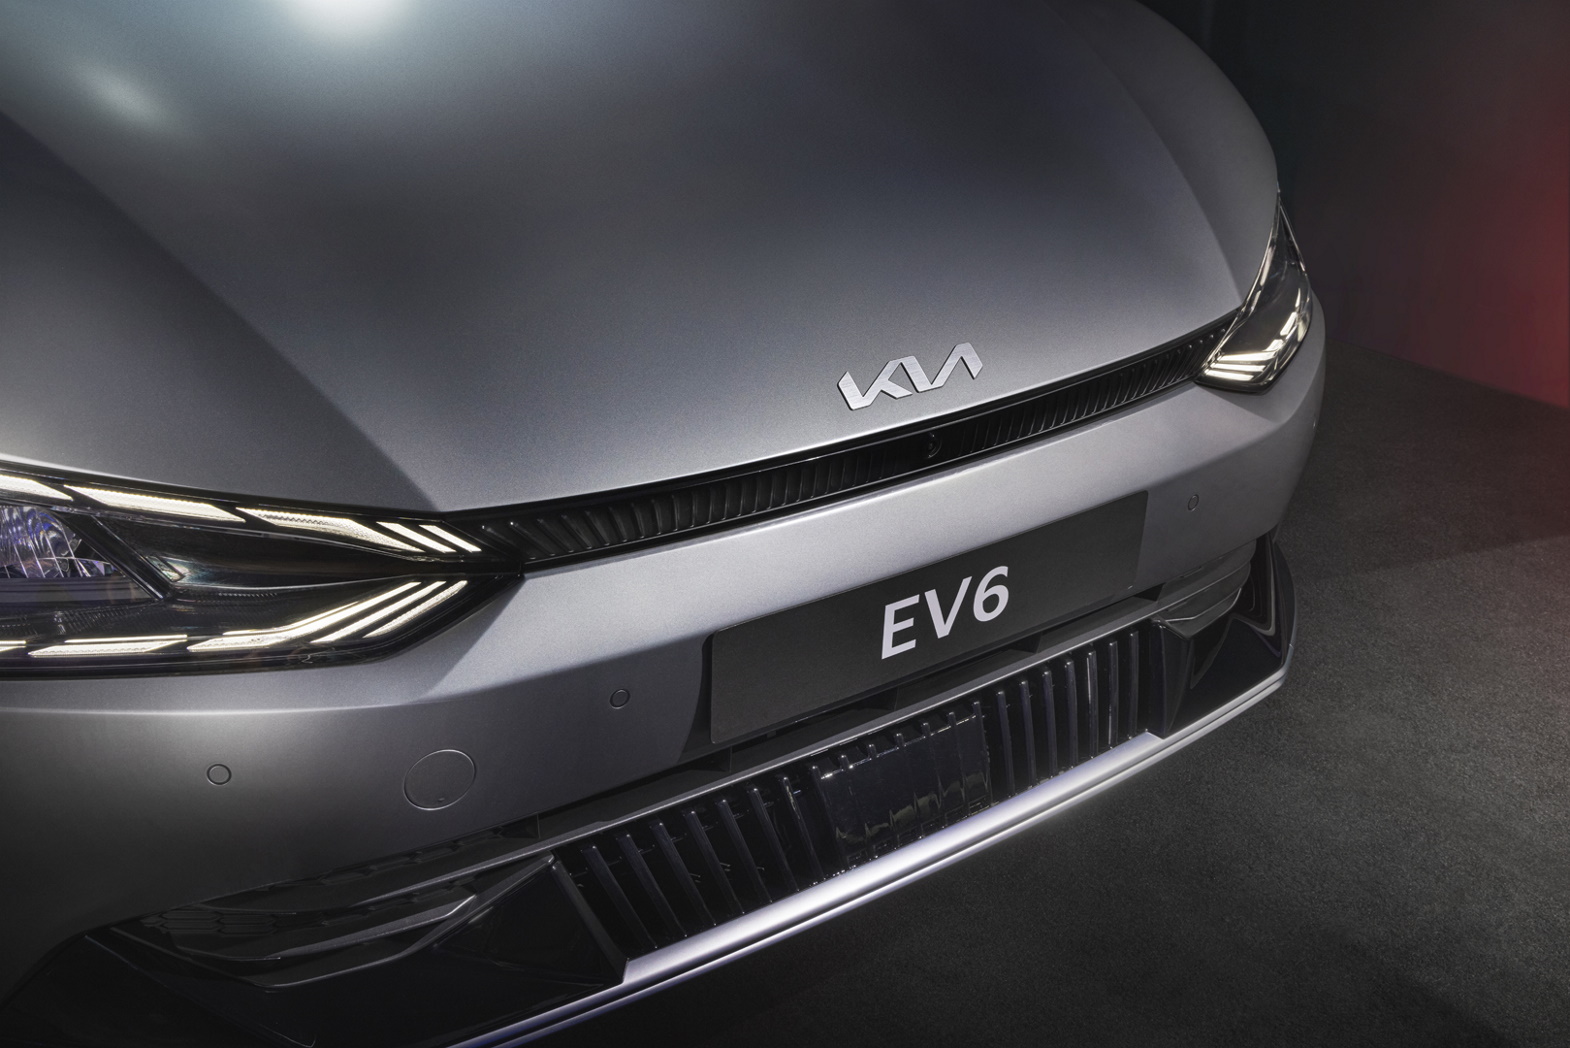 Kia начнет продажи электромобиля EV6 в России в 2022-м году